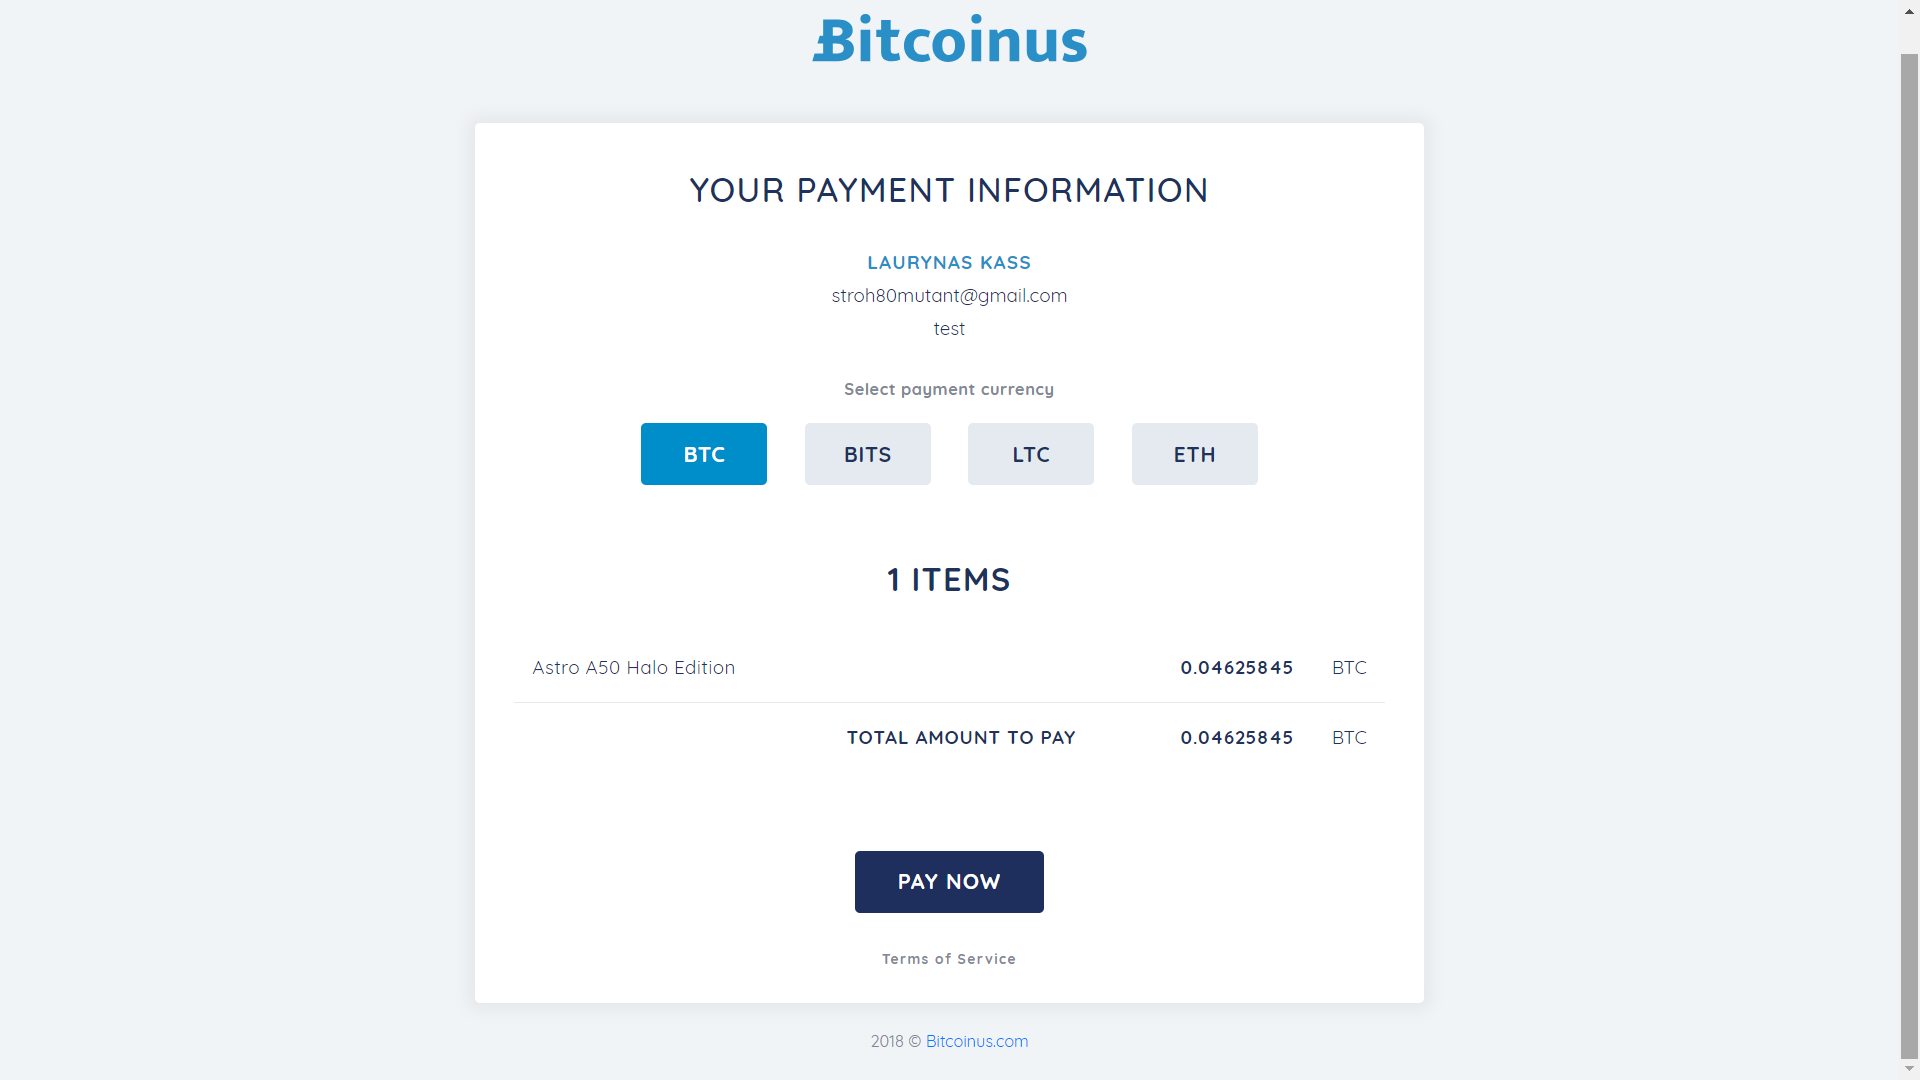 Bitcoinus checkout page 1.